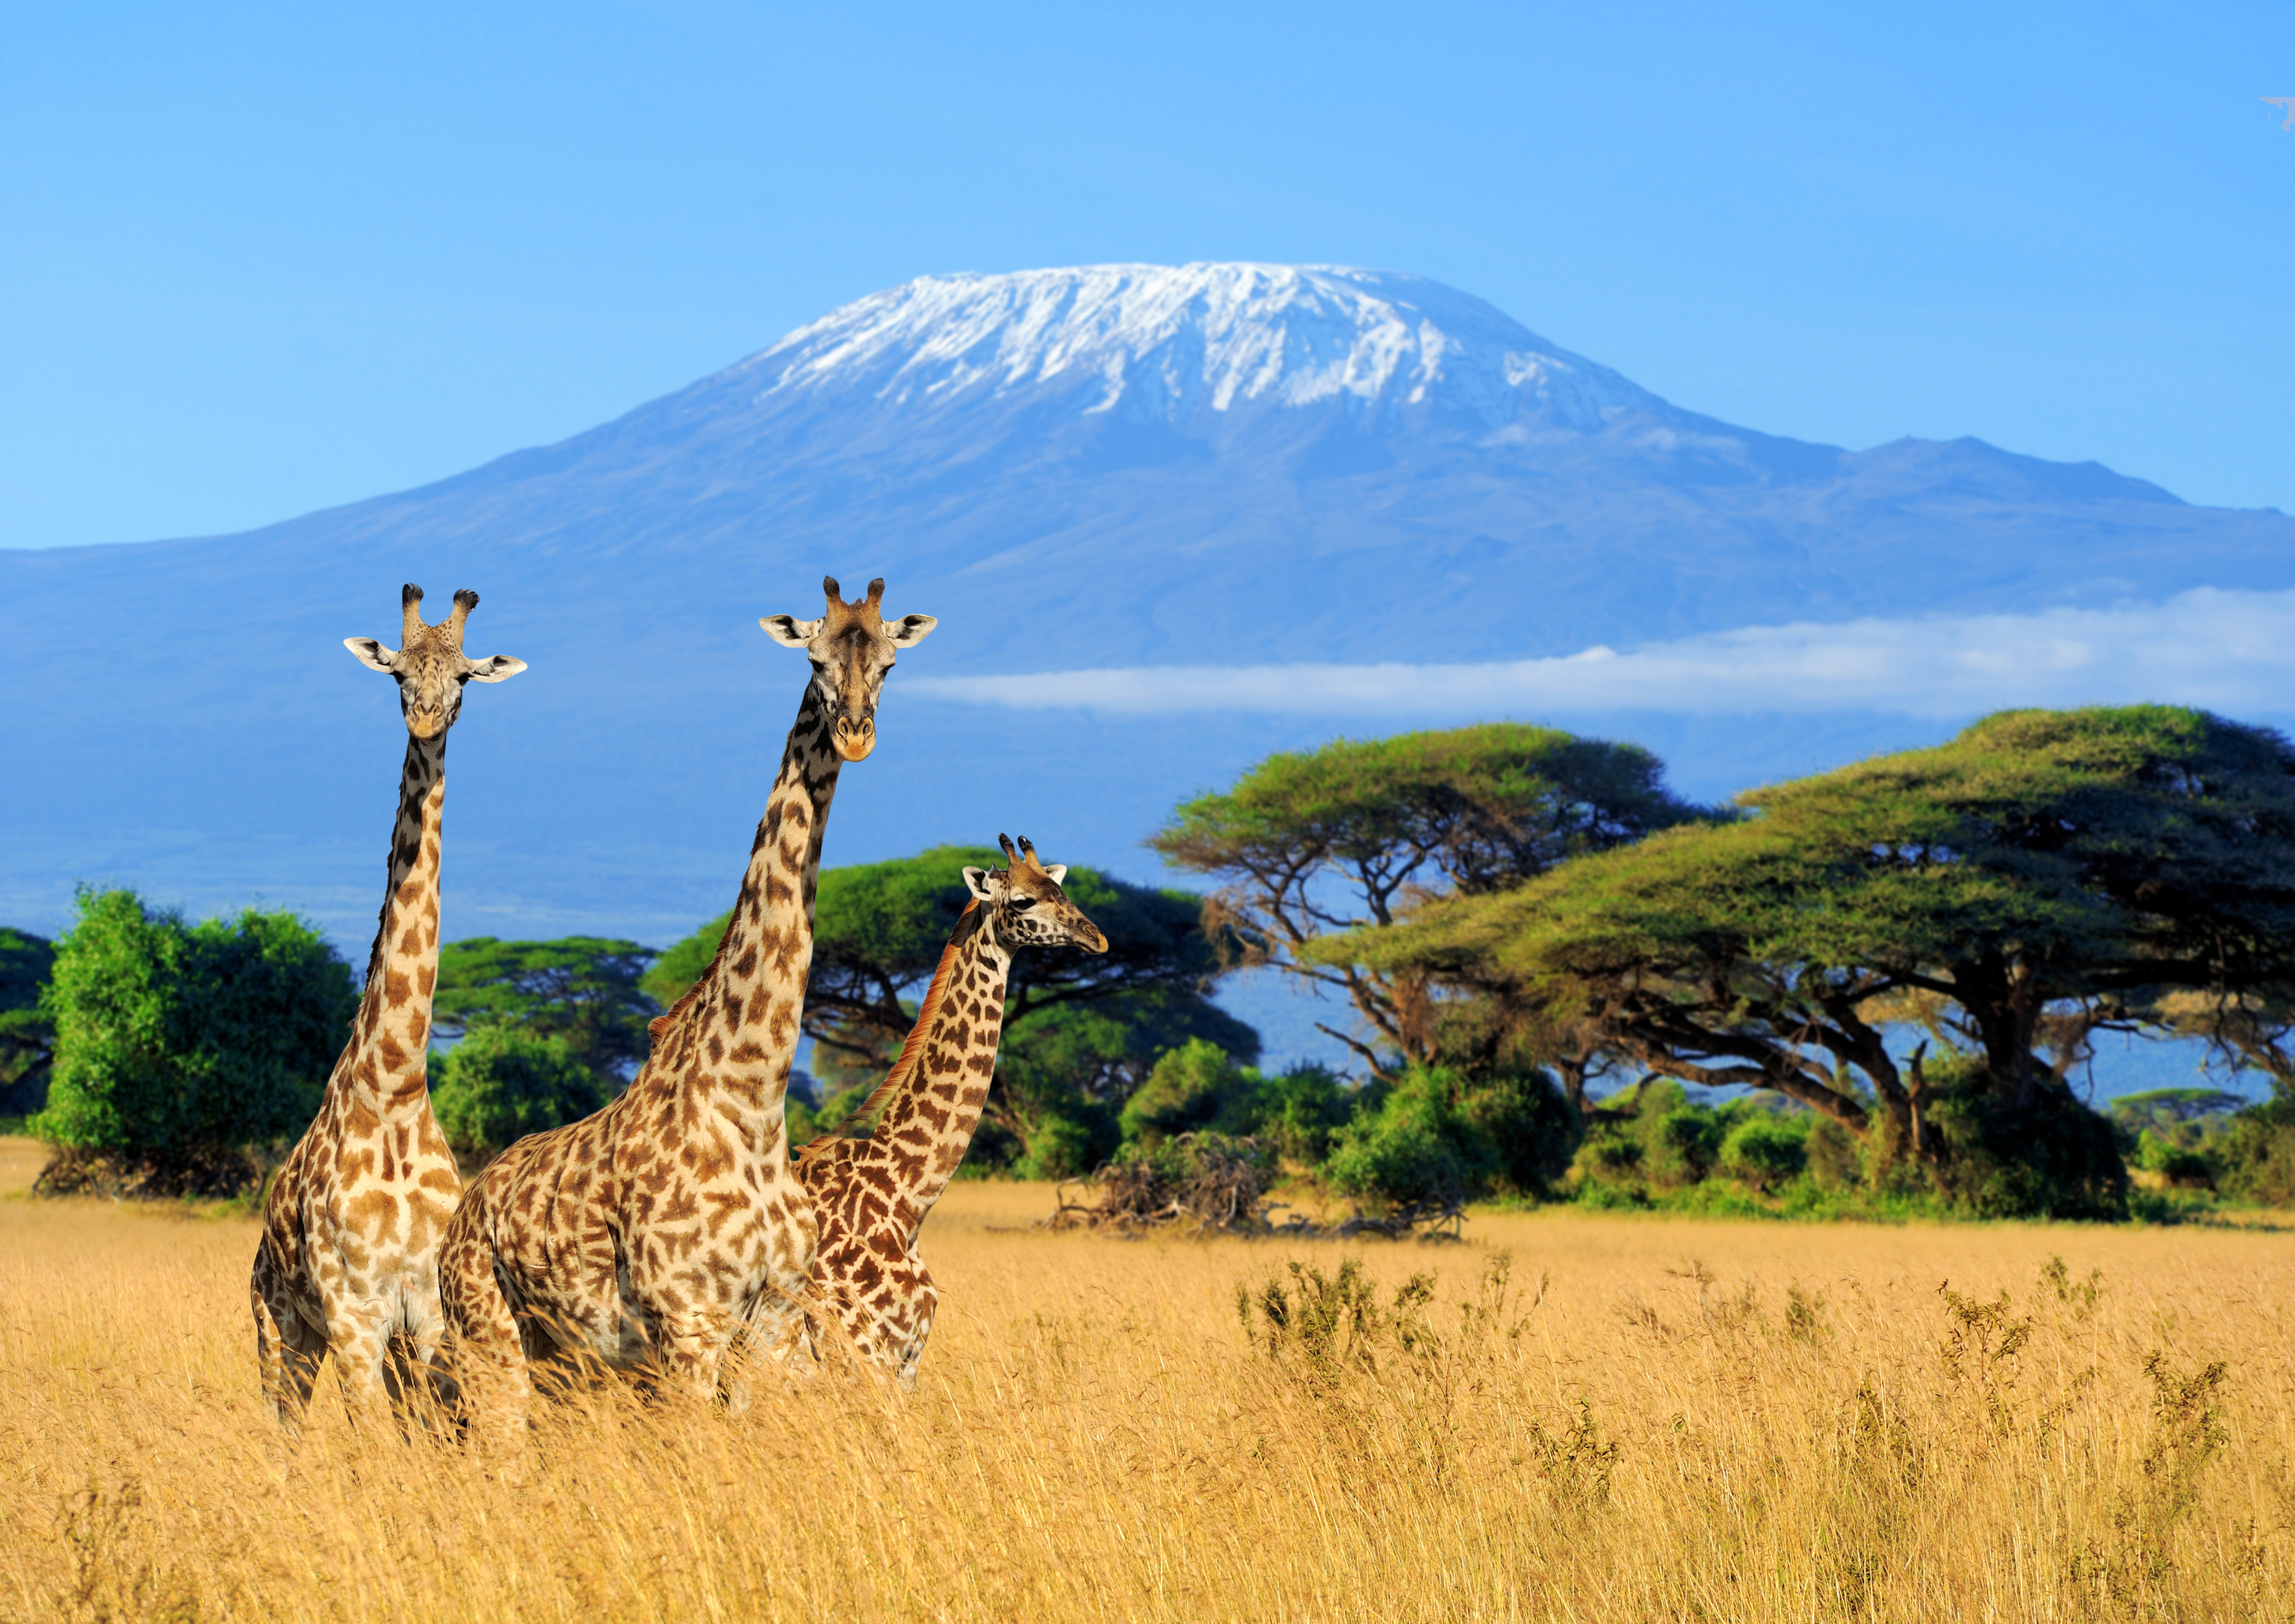 Vista del Kilimanjaro entre jirafas en Kenia.